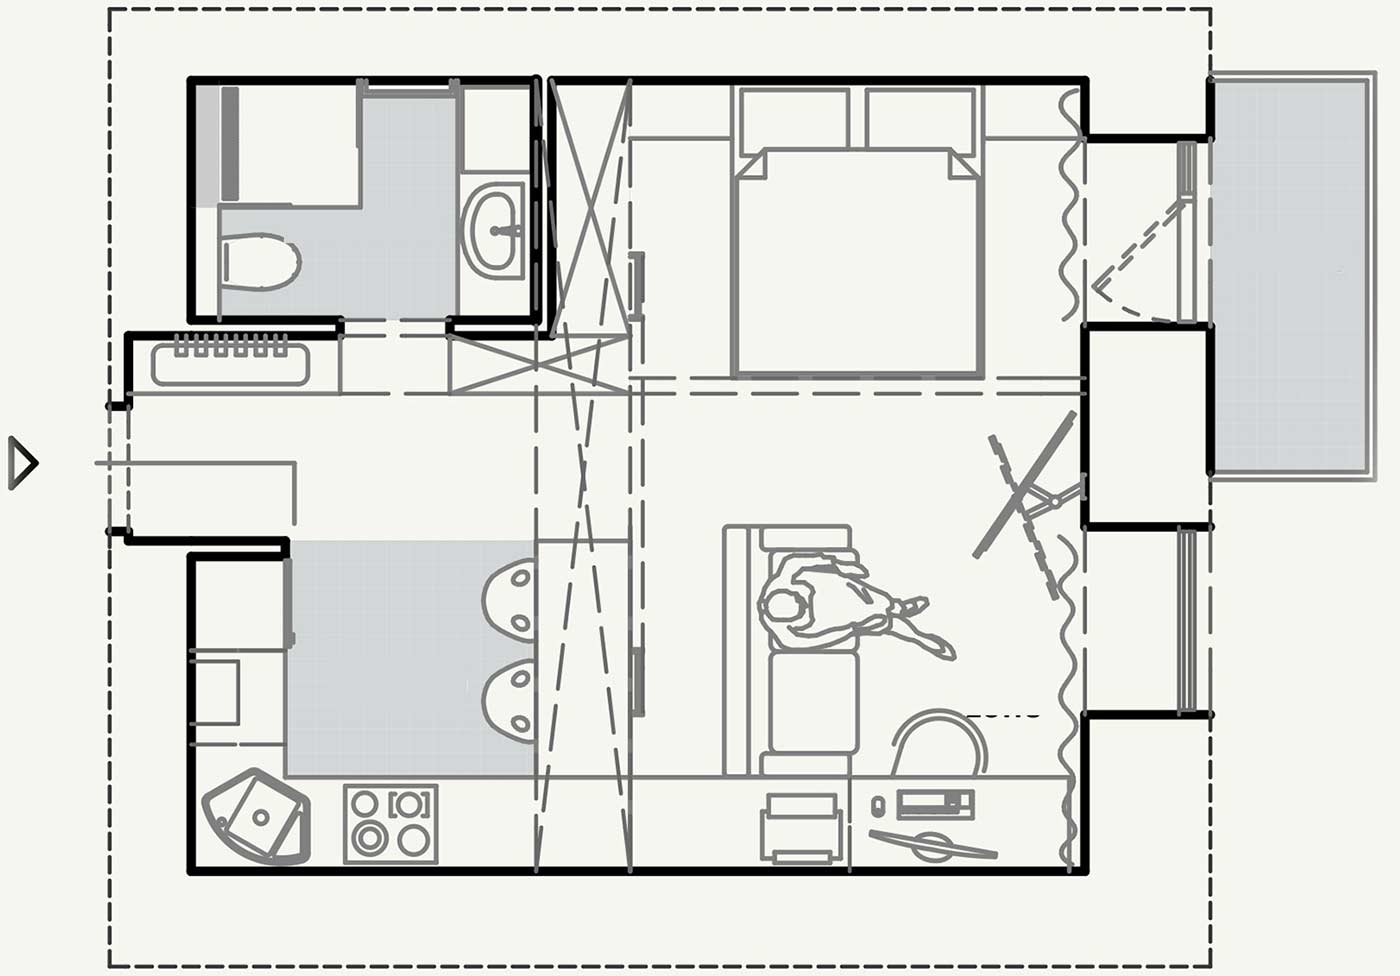 Szuper lakberendezés 29m2-en, kis lakás kreatív, stílusos és nagyon praktikus kialakítása